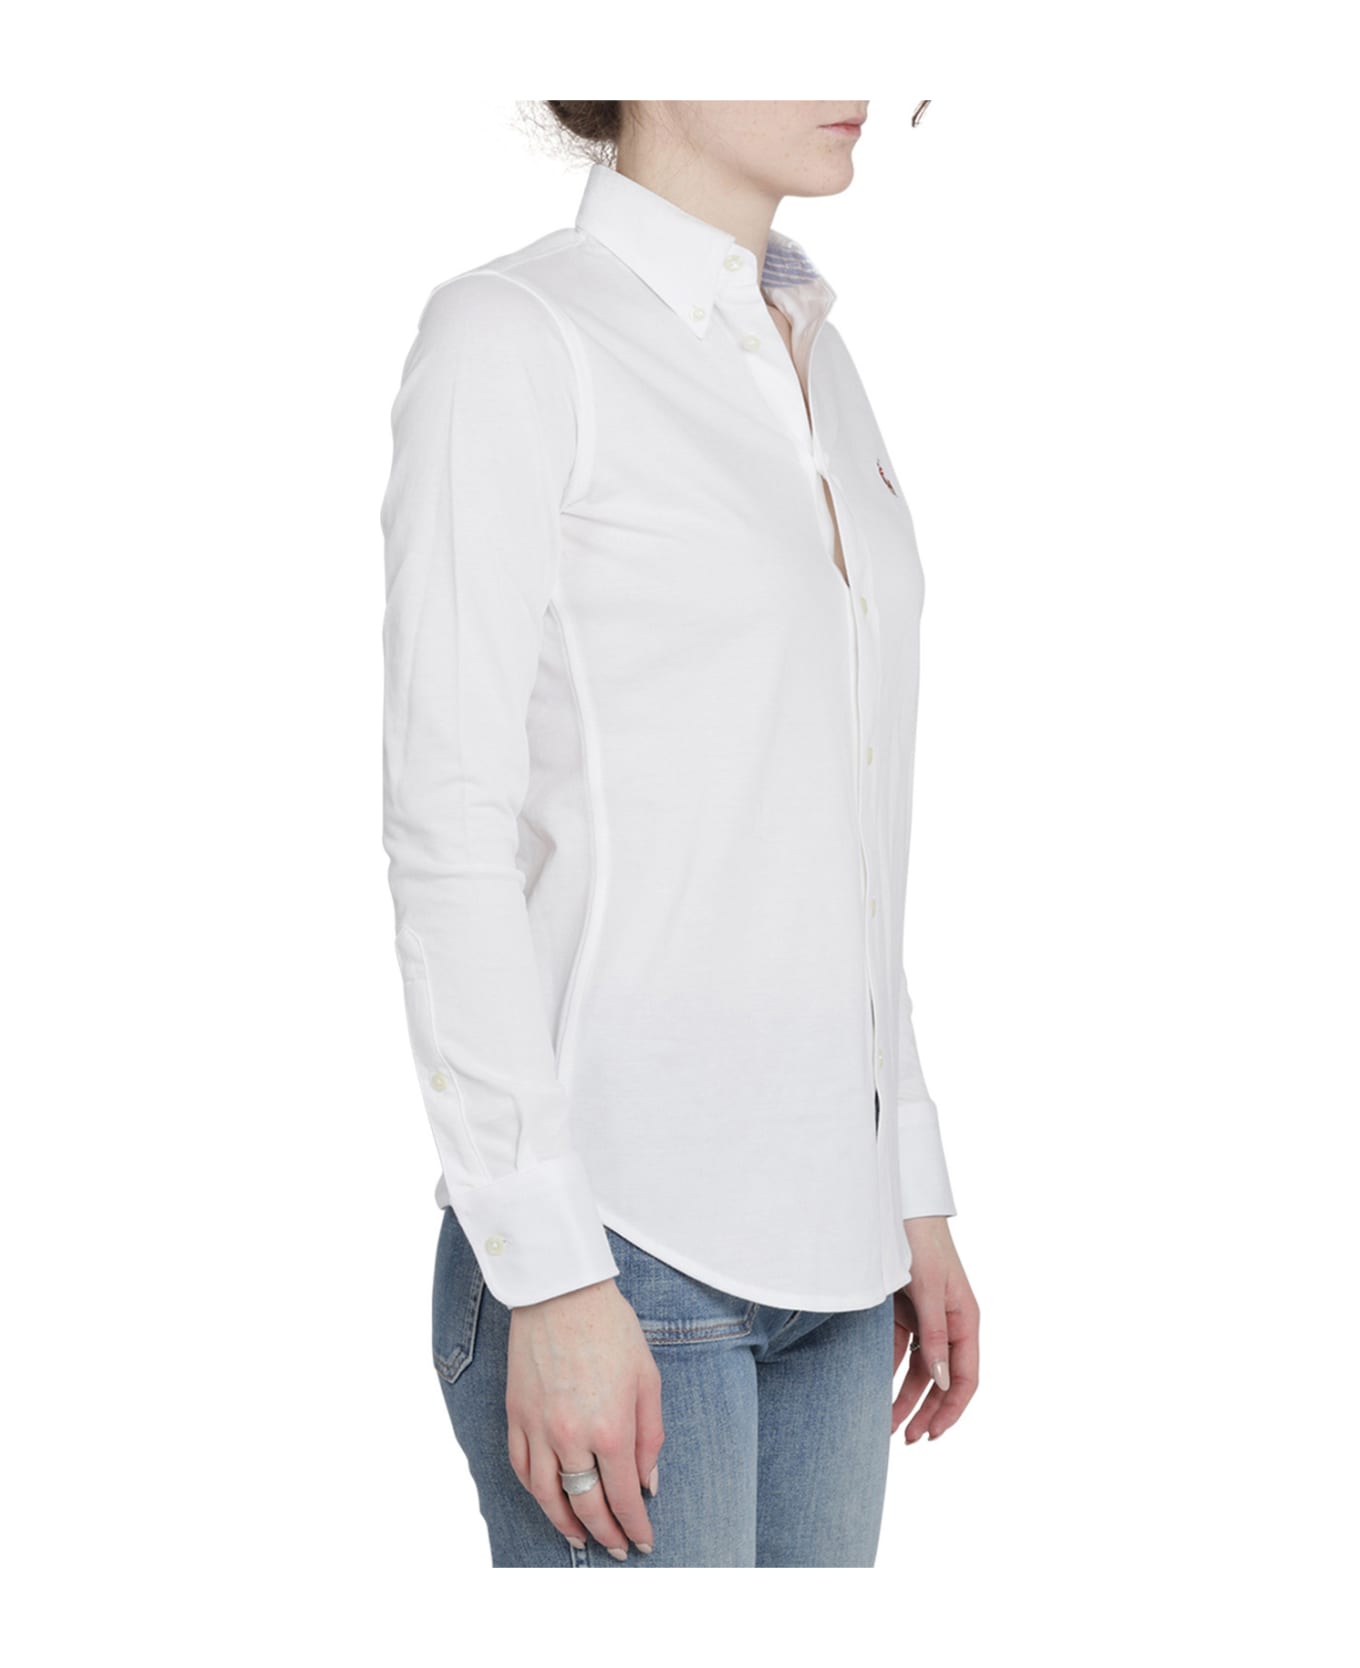 Ralph Lauren White Heidi Shirt - White シャツ